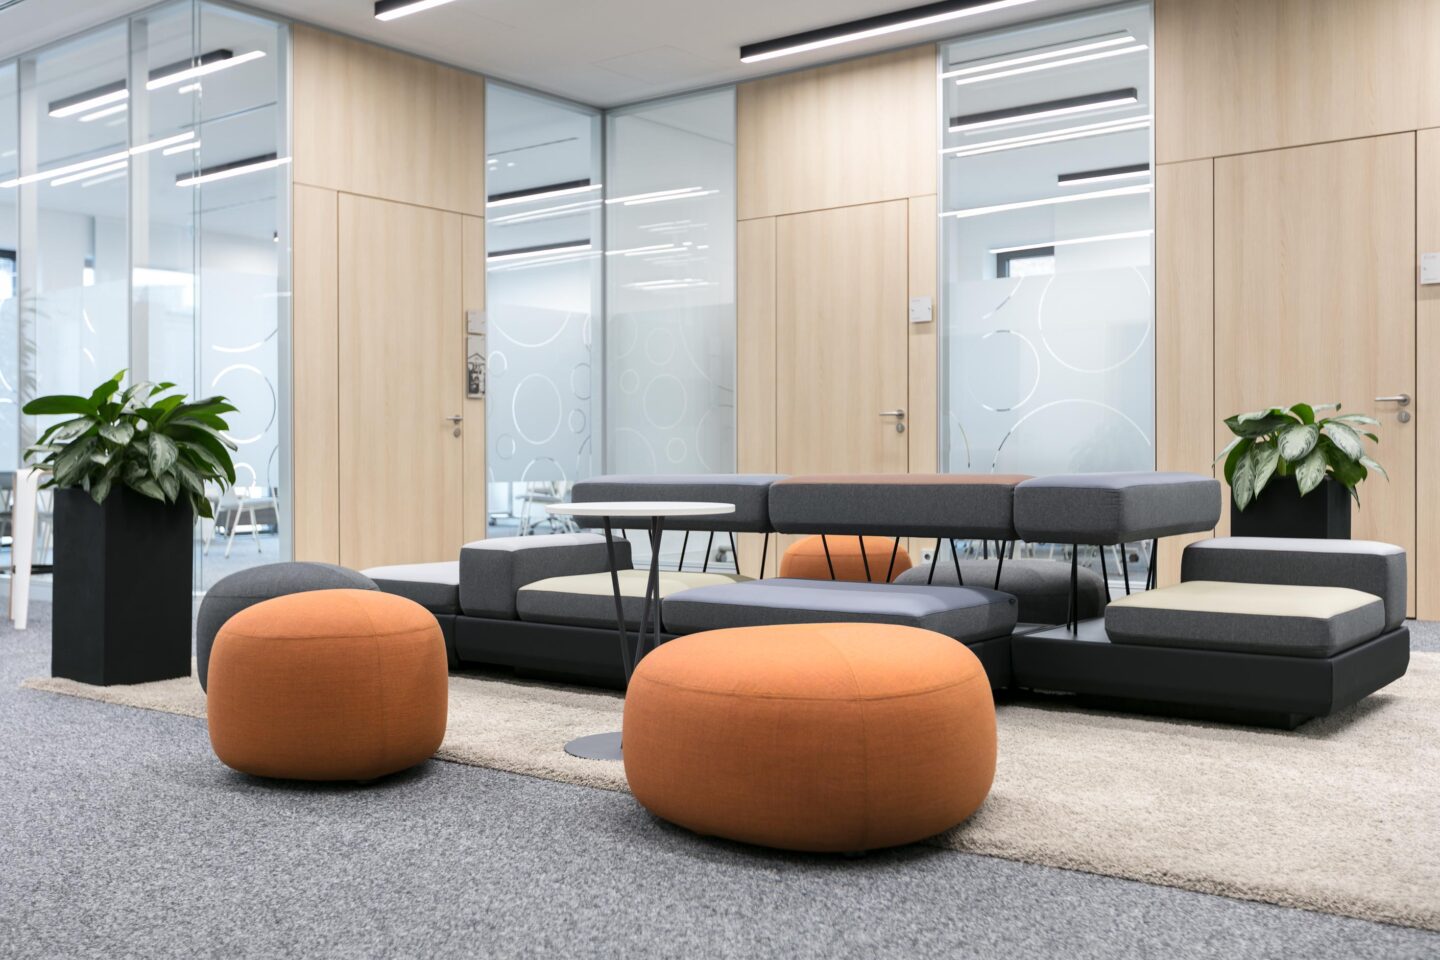 Sparkasse Karlsruhe, Building D │ flexible furniture │ lounge area